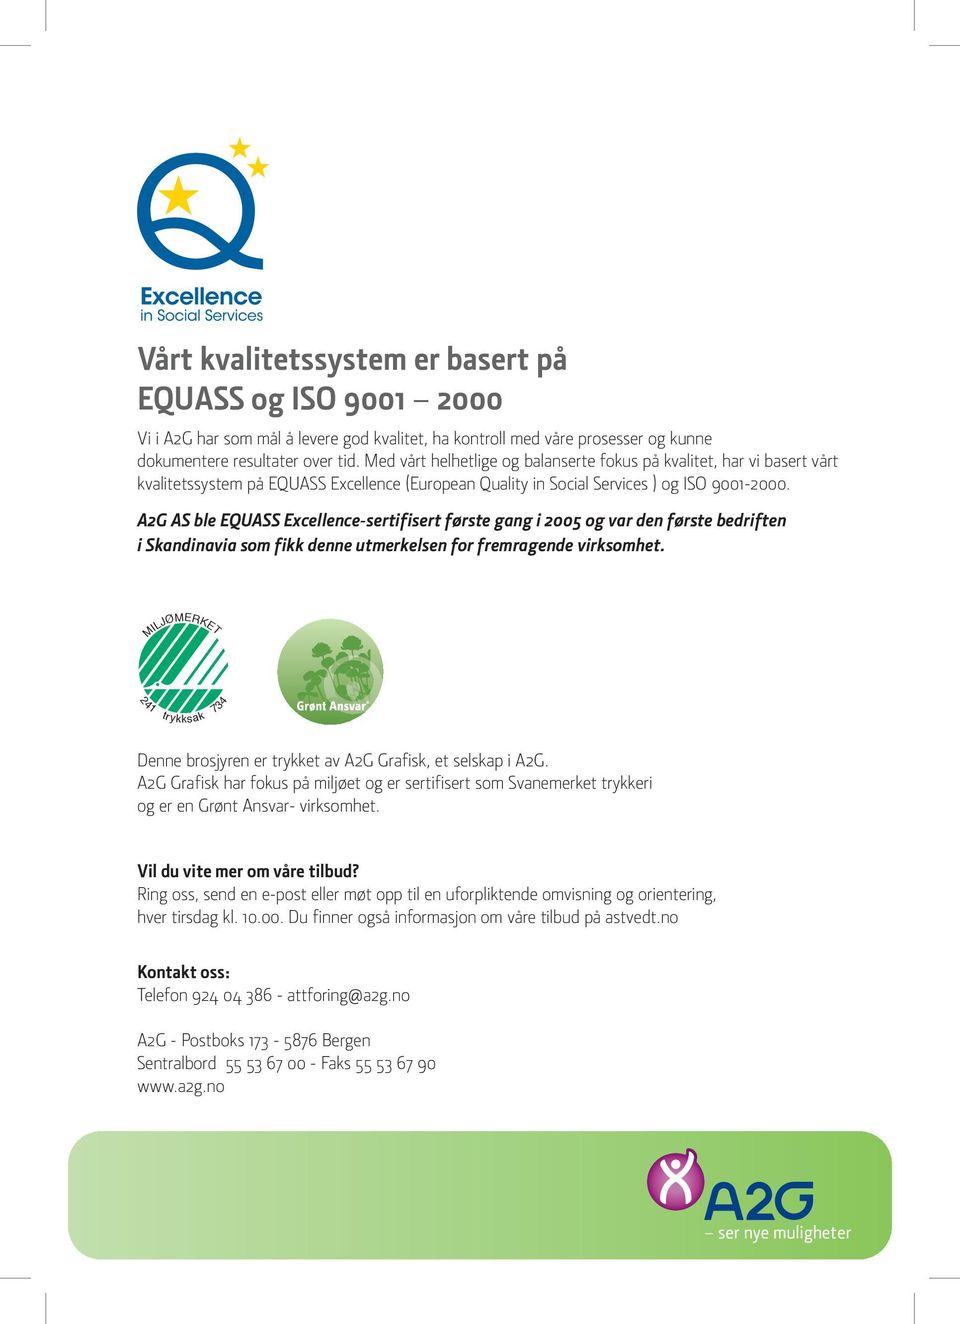 A2G AS ble EQUASS Excellence-sertifisert første gang i 2005 og var den første bedriften i Skandinavia som fikk denne utmerkelsen for fremragende virksomhet.